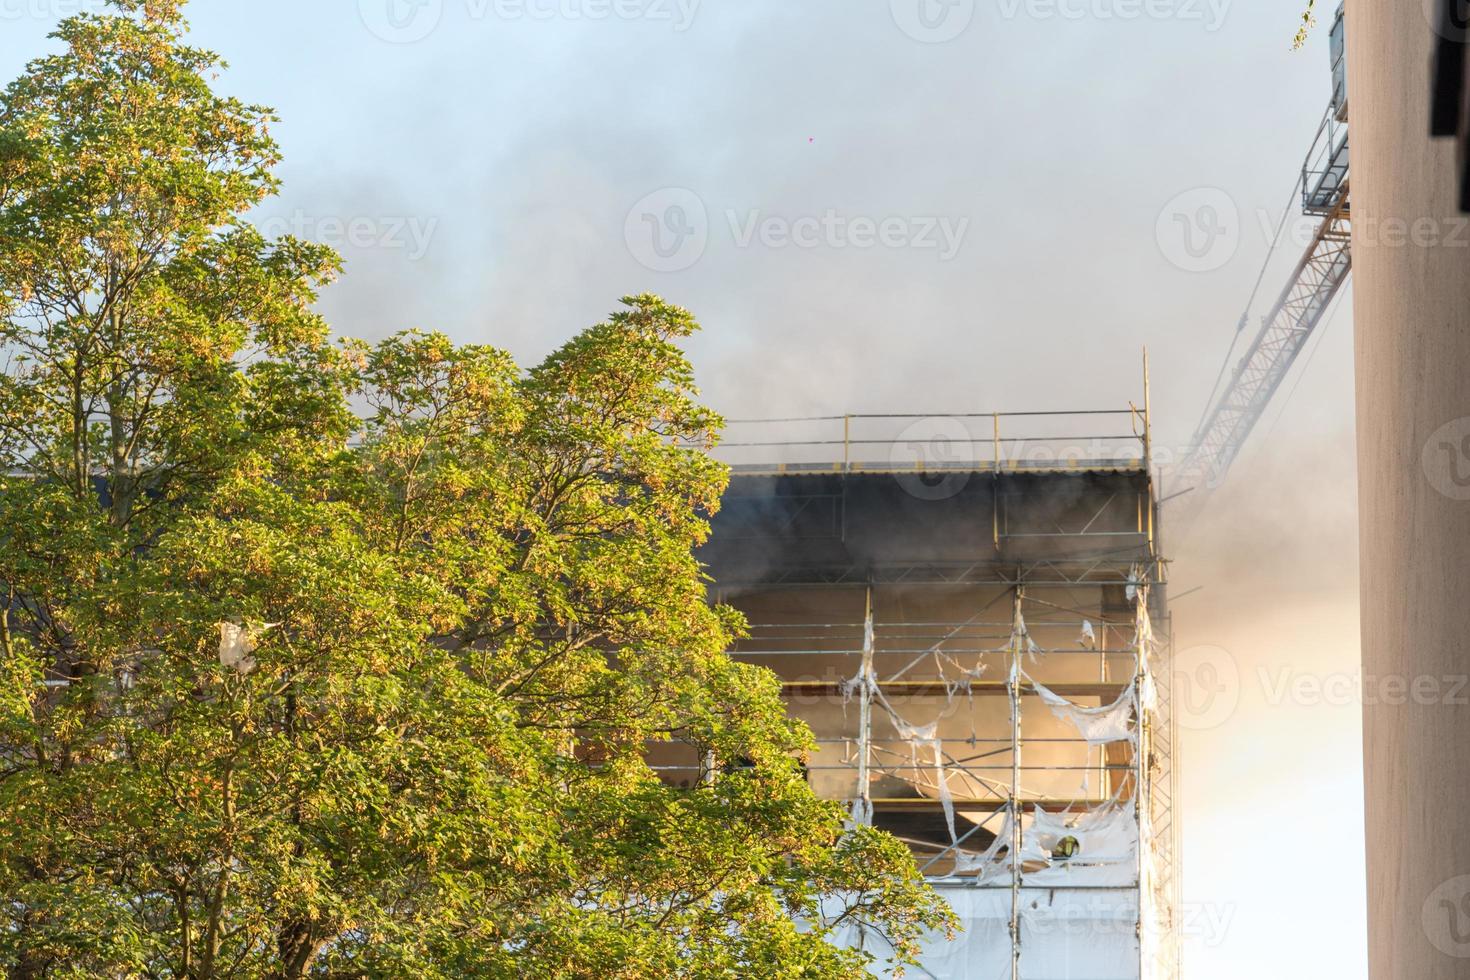 incêndio danifica edifício em construção foto